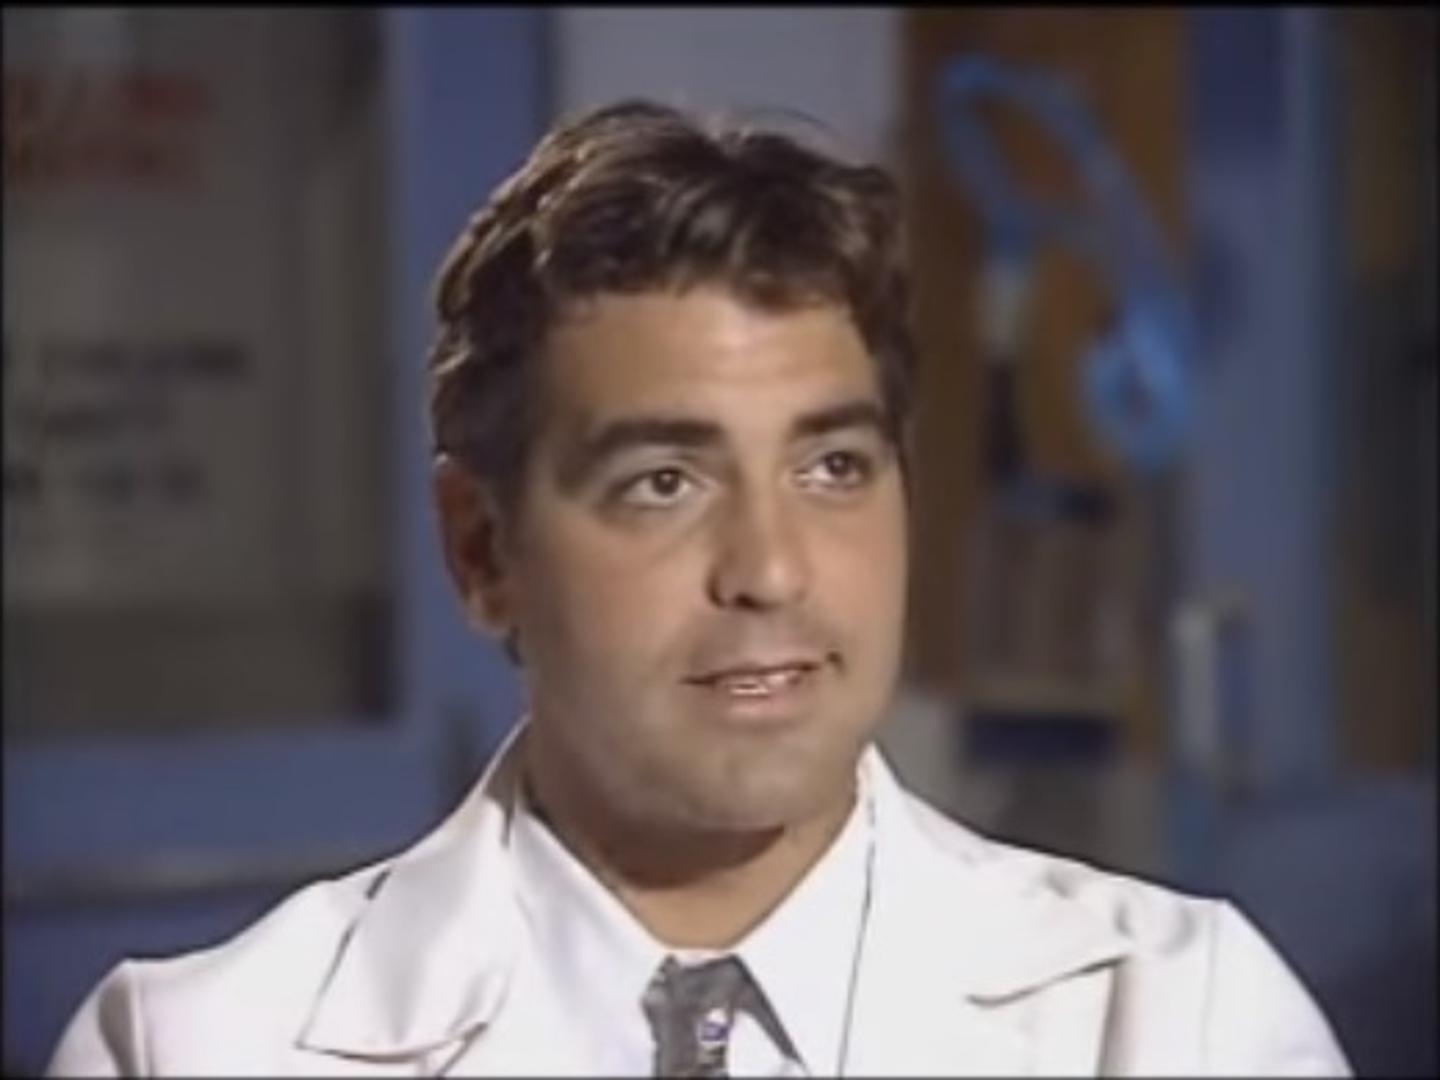  Hollywood je osvojio ulogom u seriji "Hitna služba" u kojoj je igrao doktora Douga Rossa. U nekoliko navrata Clooney je proglašen najzgodnijim i najpametnijim muškarcem.